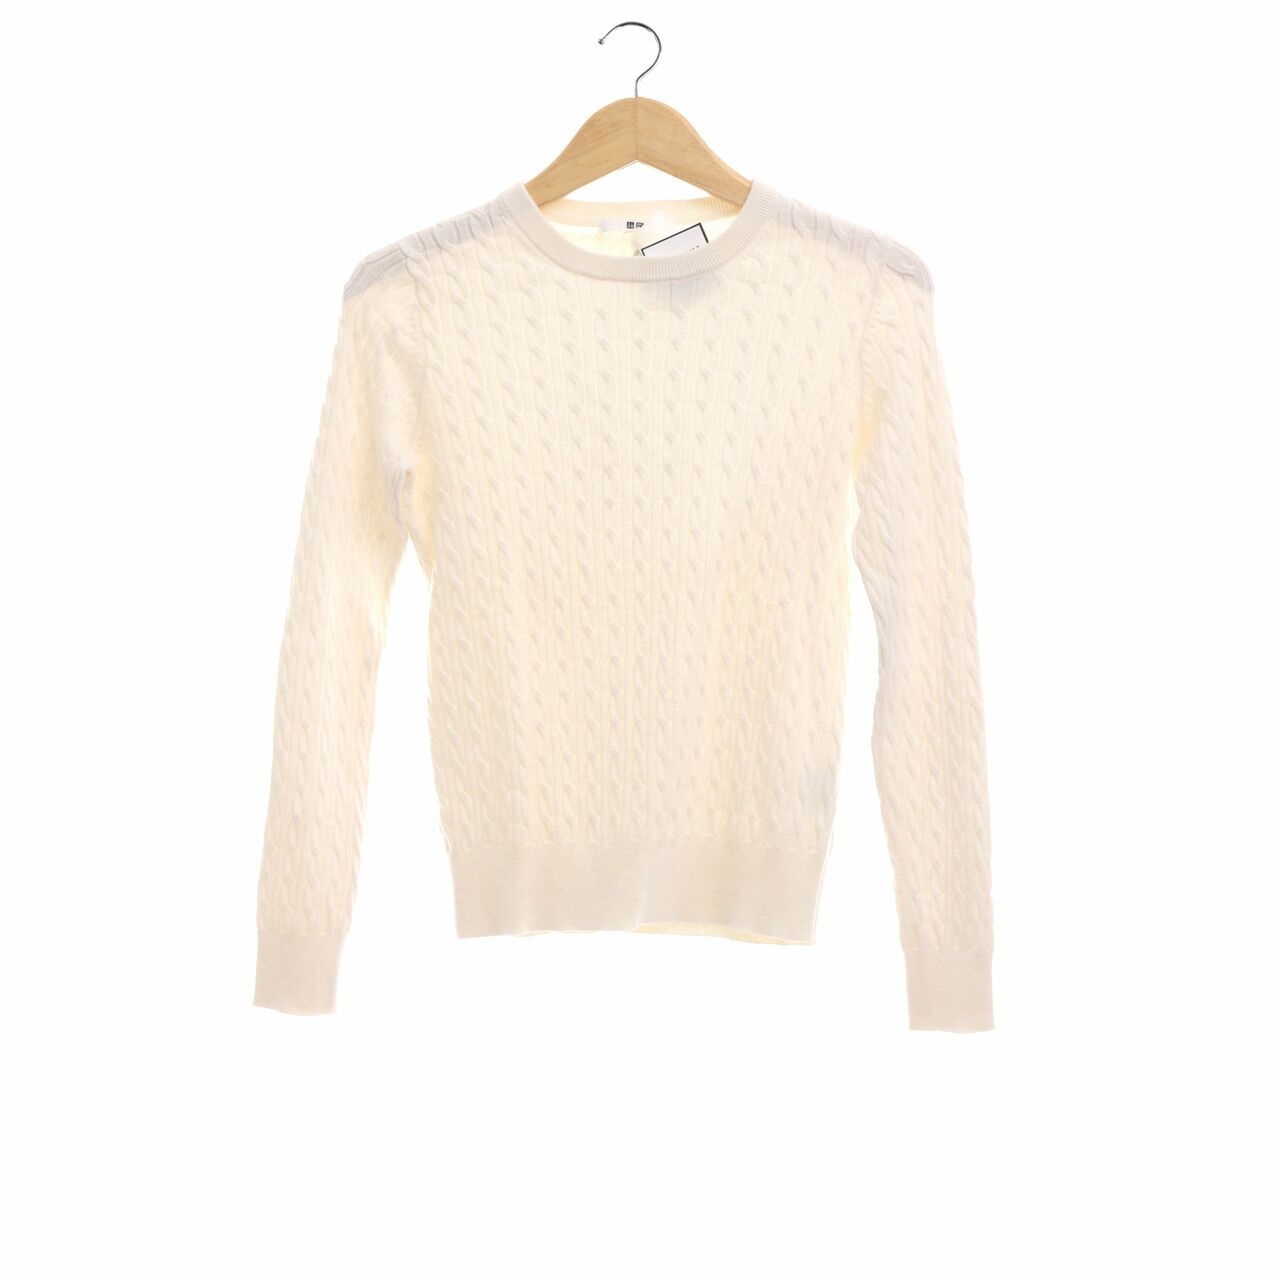 UNIQLO White Sweater